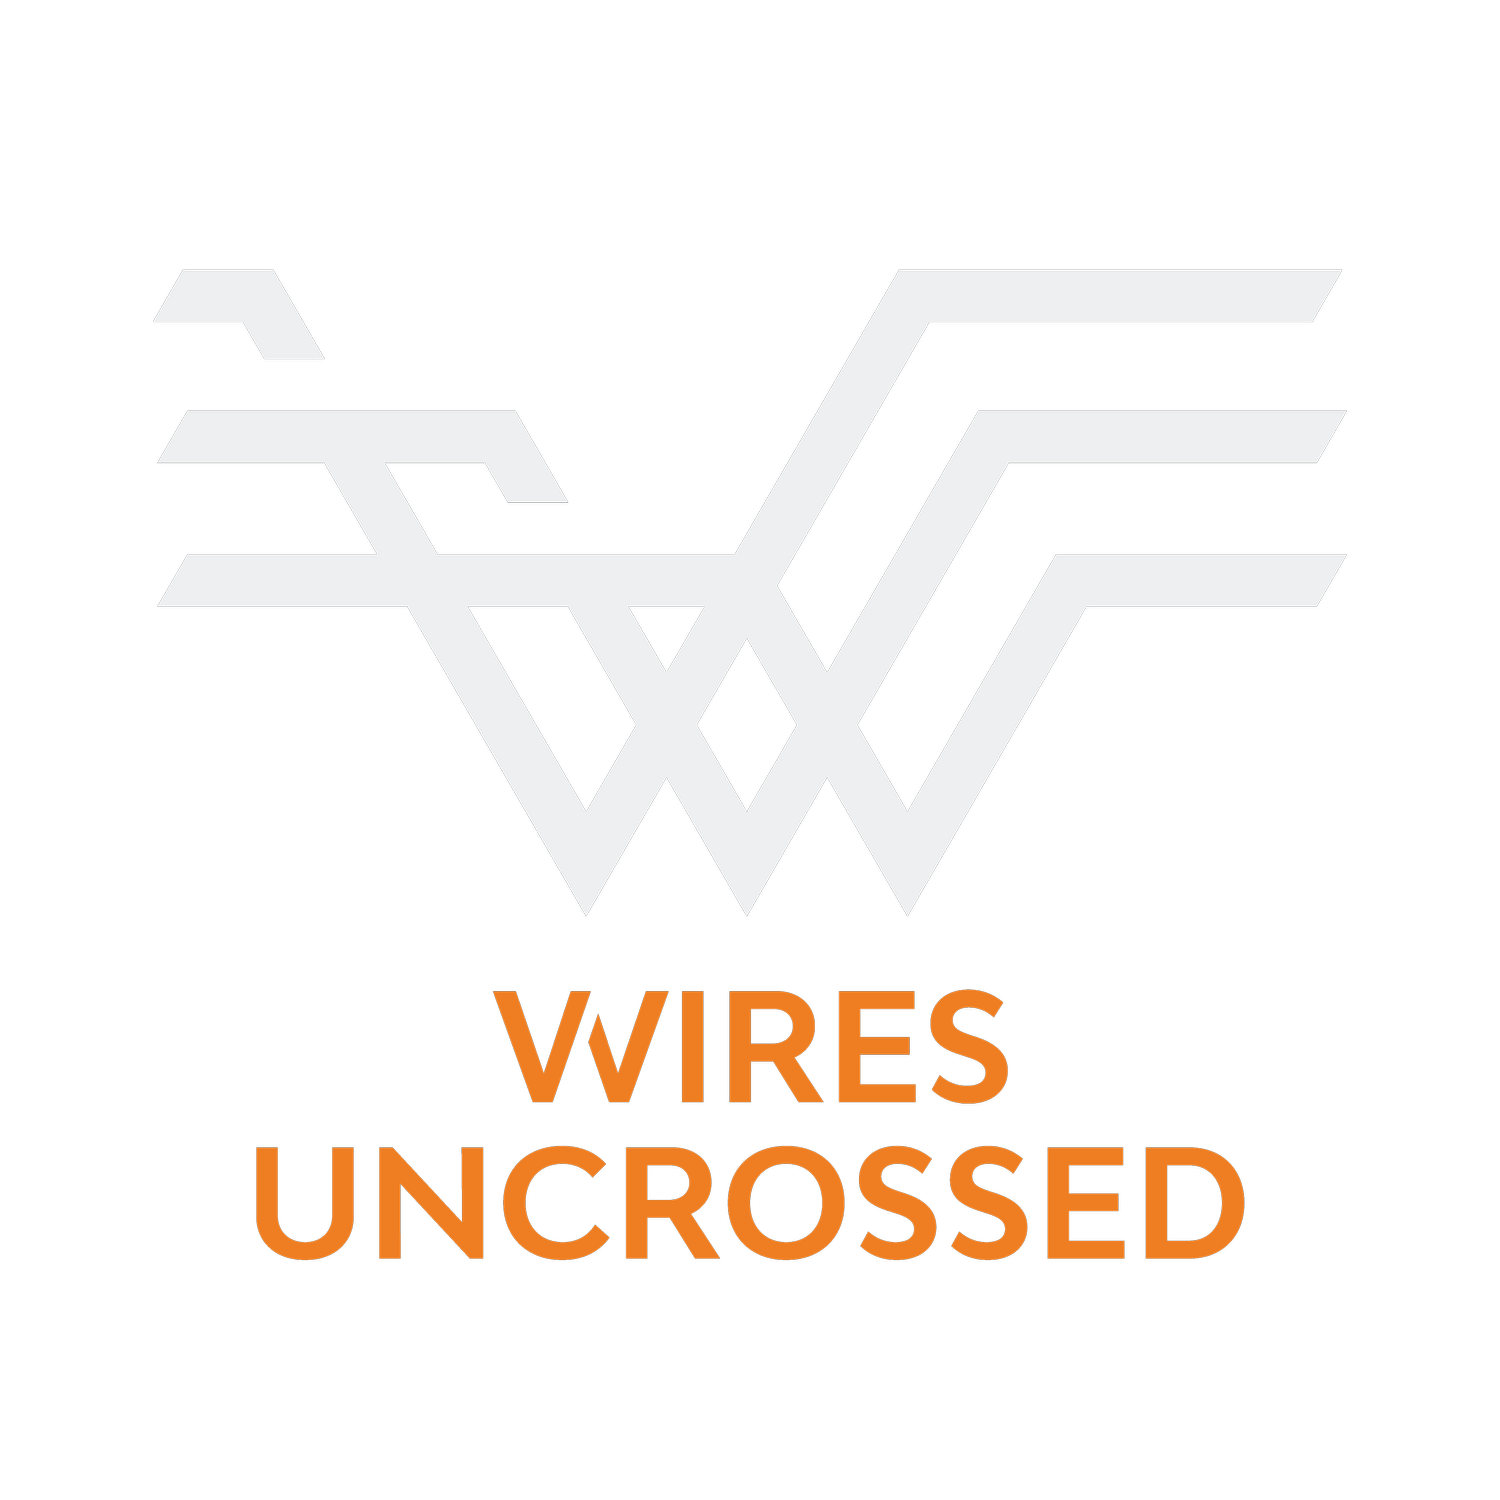 Wires Uncrossed Engineering